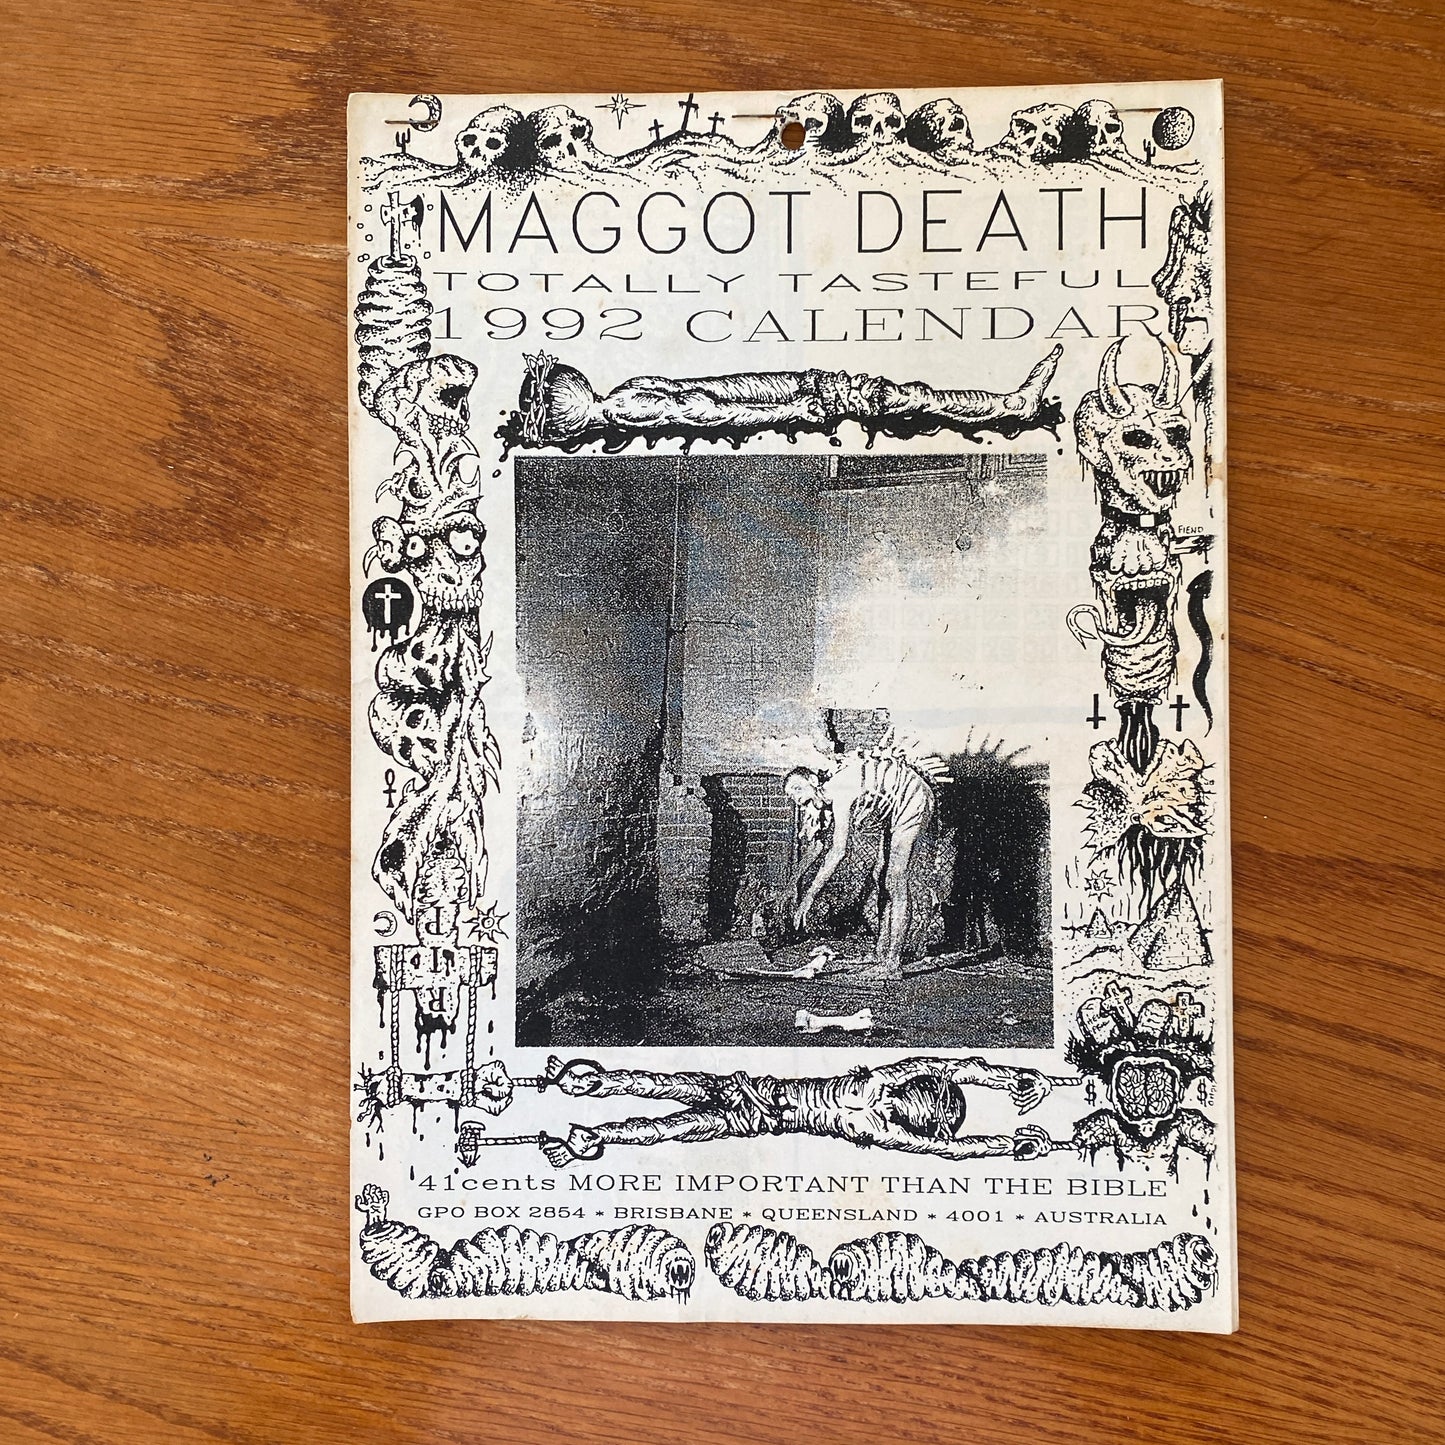 Maggot Death 1992 Calendar